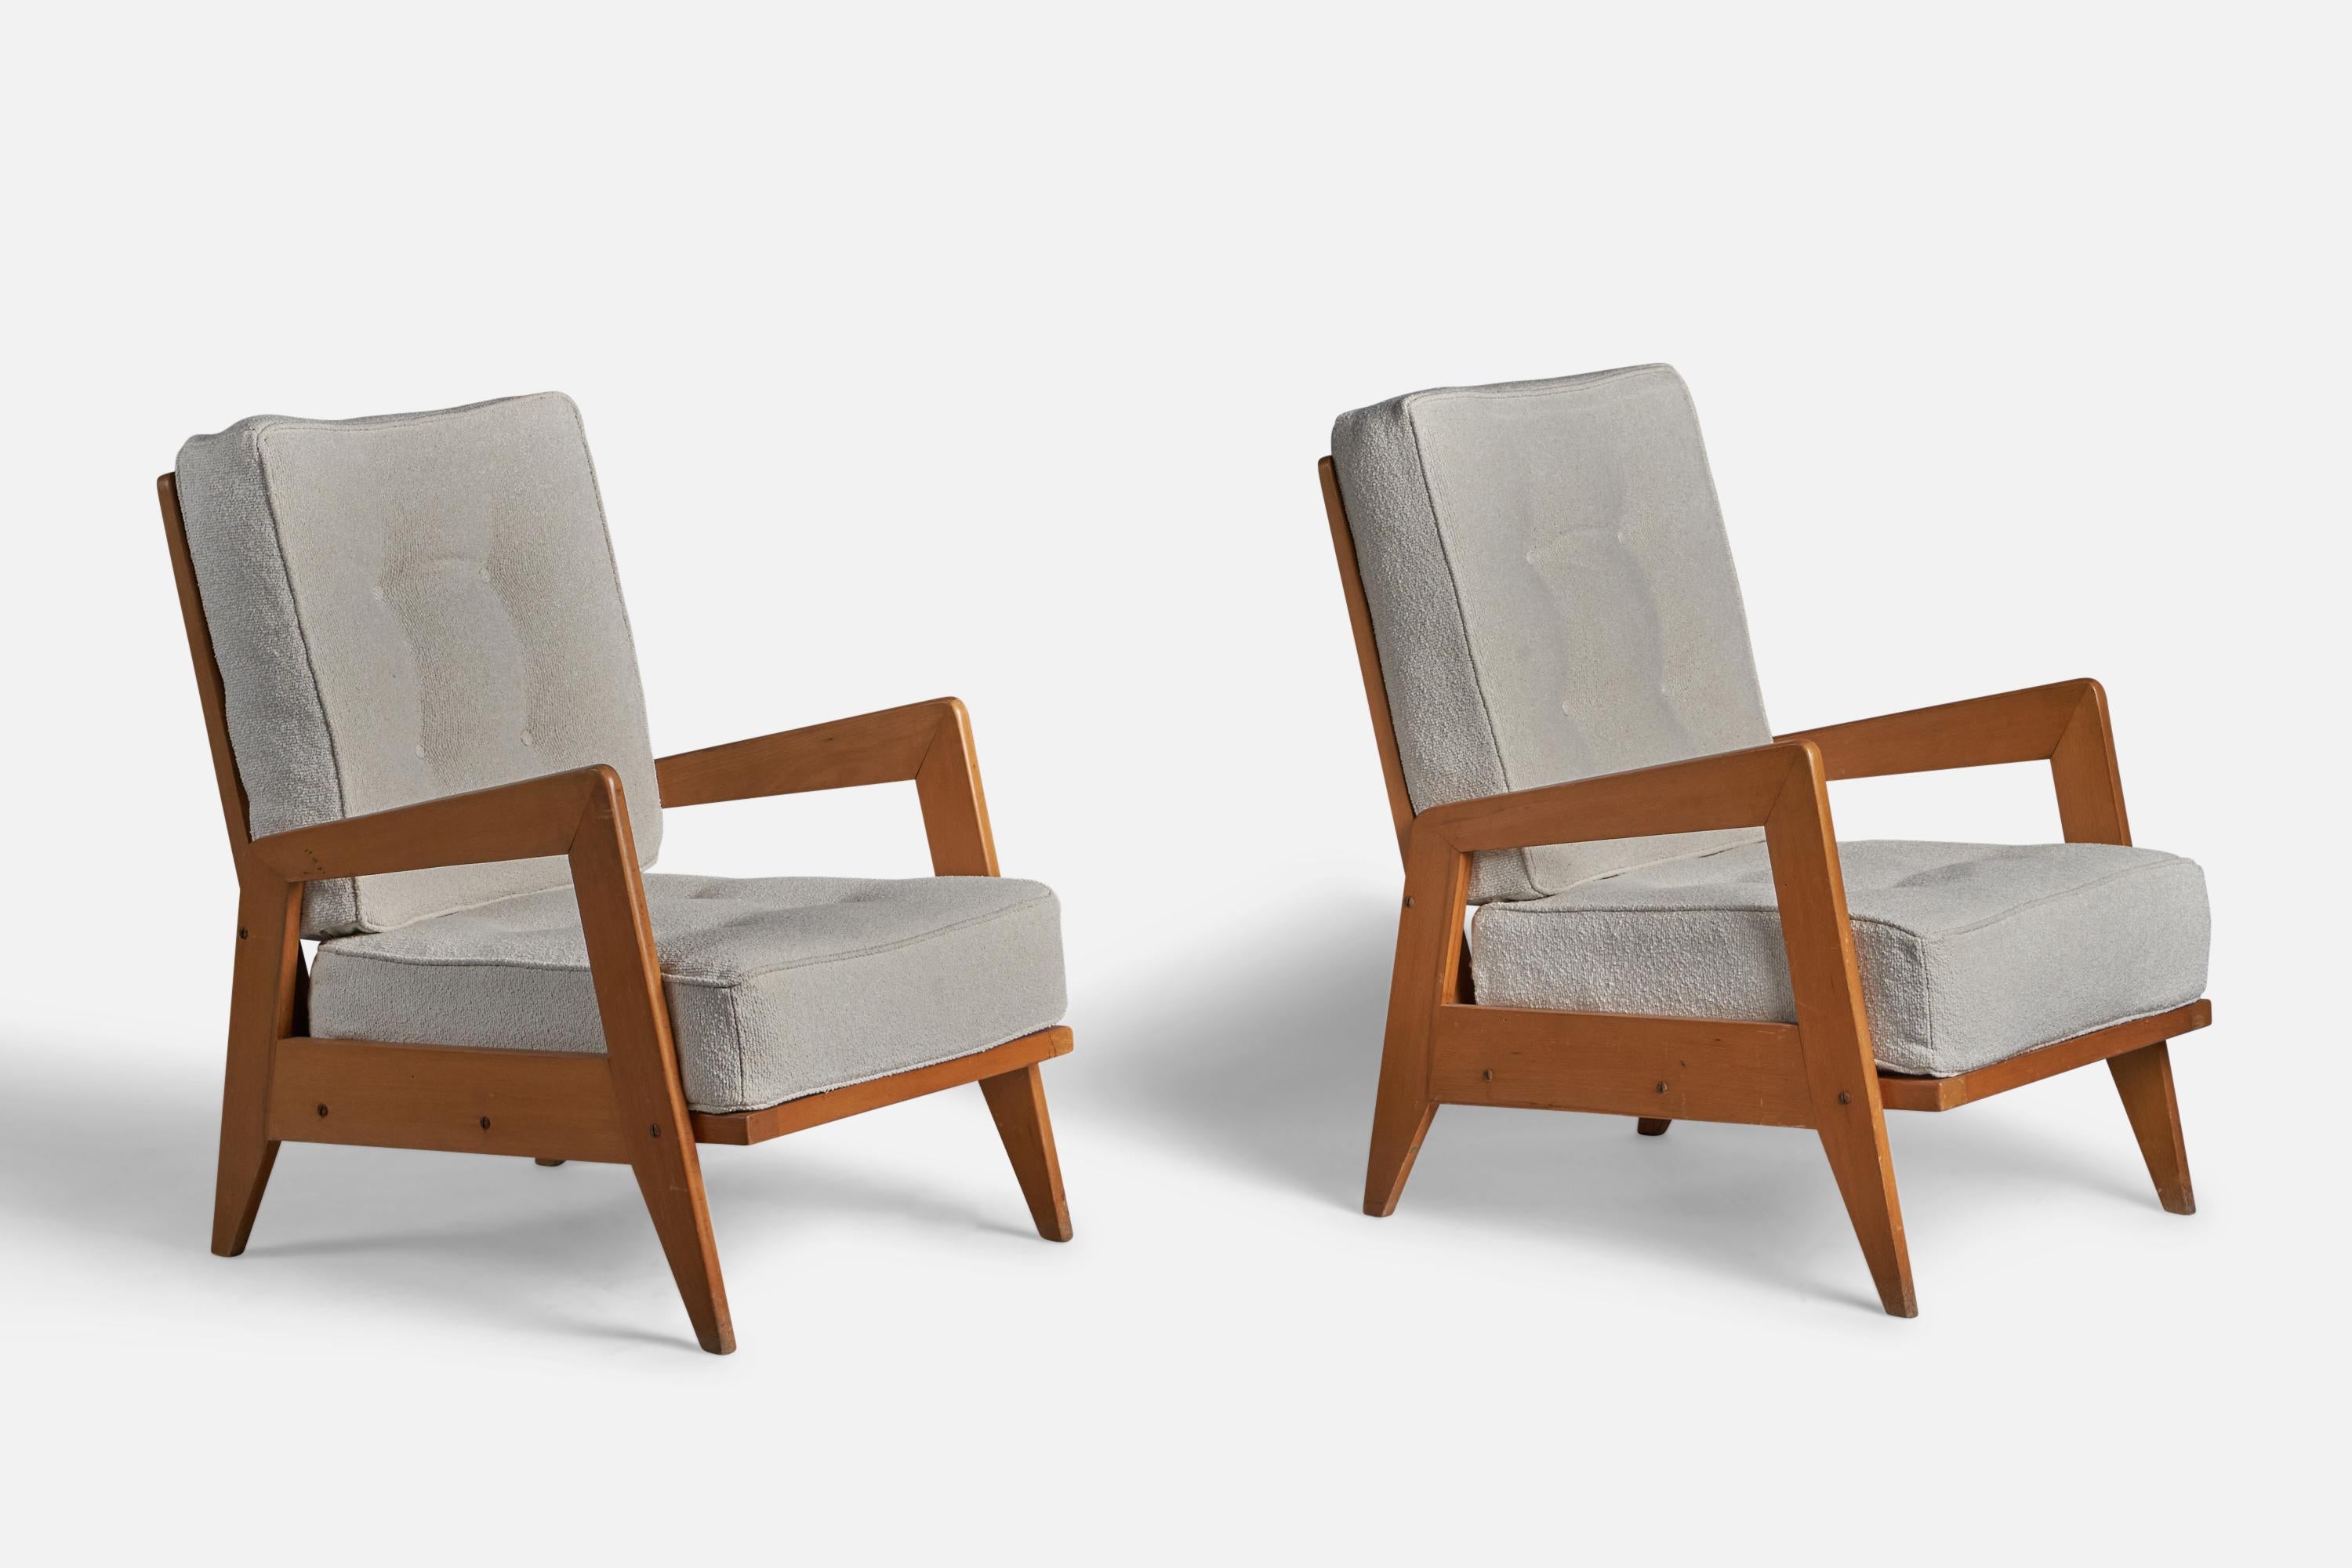 Paire de chaises de salon en bois et tissu blanc cassé, conçues et produites en Italie, années 1950.

Hauteur d'assise de 14 pouces
